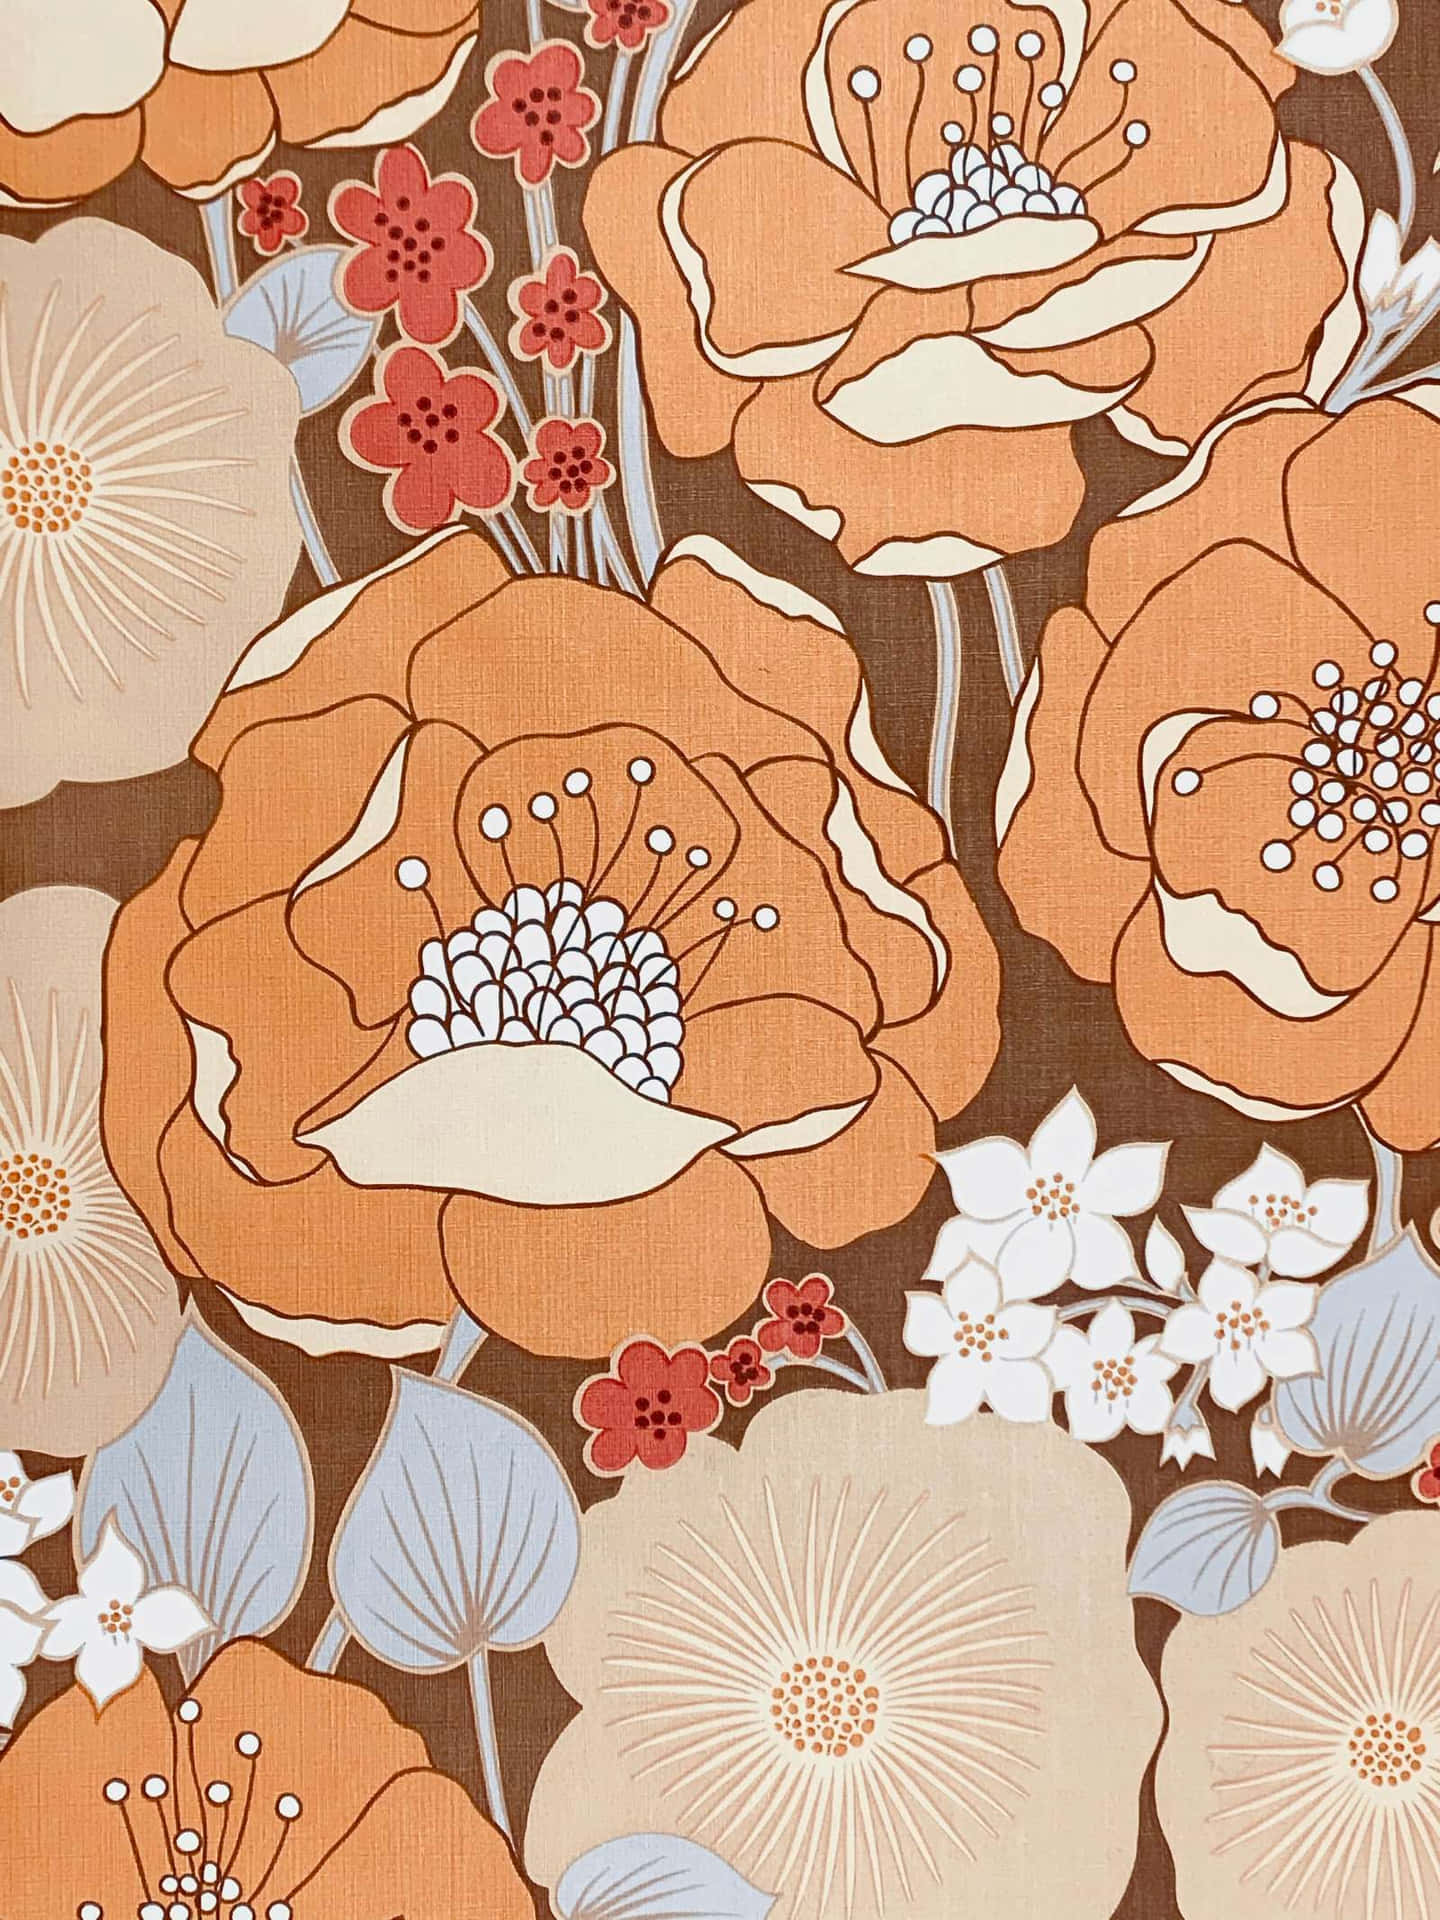 Bildretro 70er Flower-power-muster Wallpaper